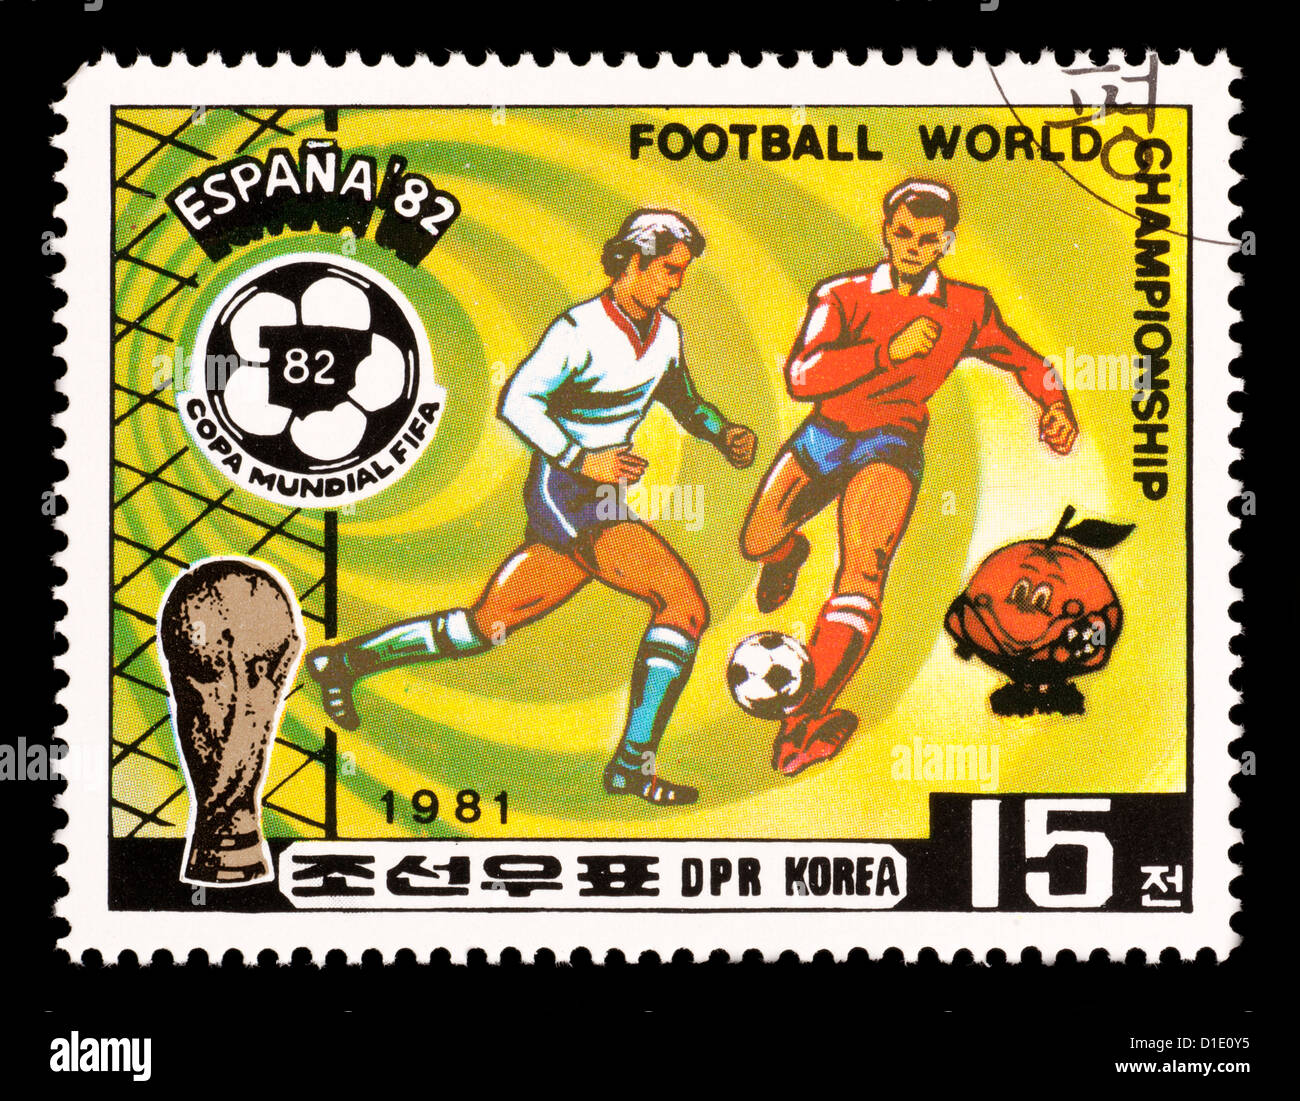 Timbre-poste à partir de la Corée du Nord représentant des joueurs de football, émis pour la Coupe du Monde de football 1982 en Espagne. Banque D'Images